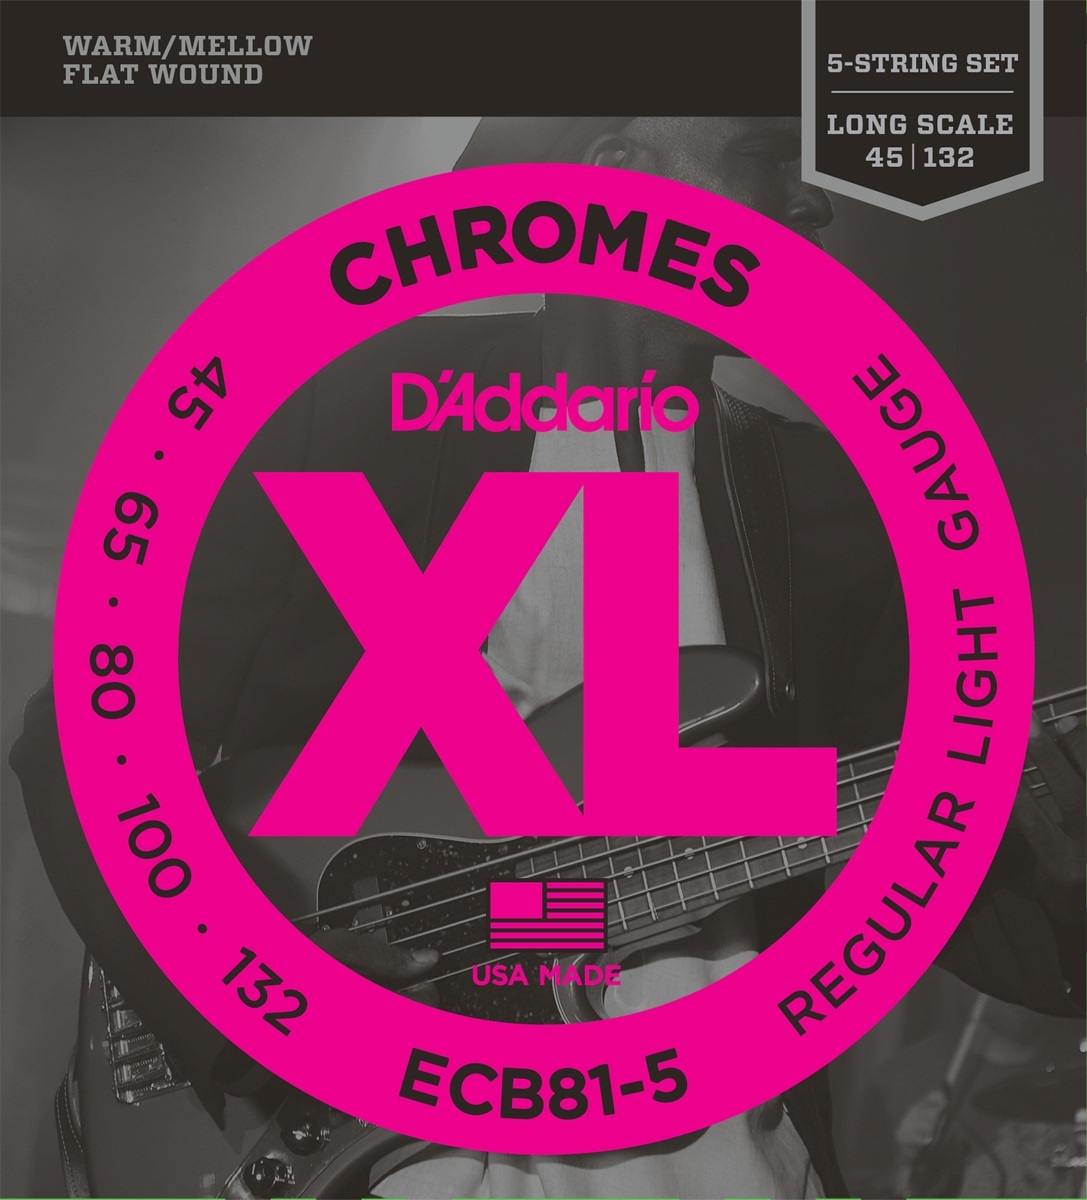 D'addario Jeu De 5 Cordes Basse Elec. 5c Chromes Long Scale 045.132 Ecb81.5 - Electric bass strings - Main picture